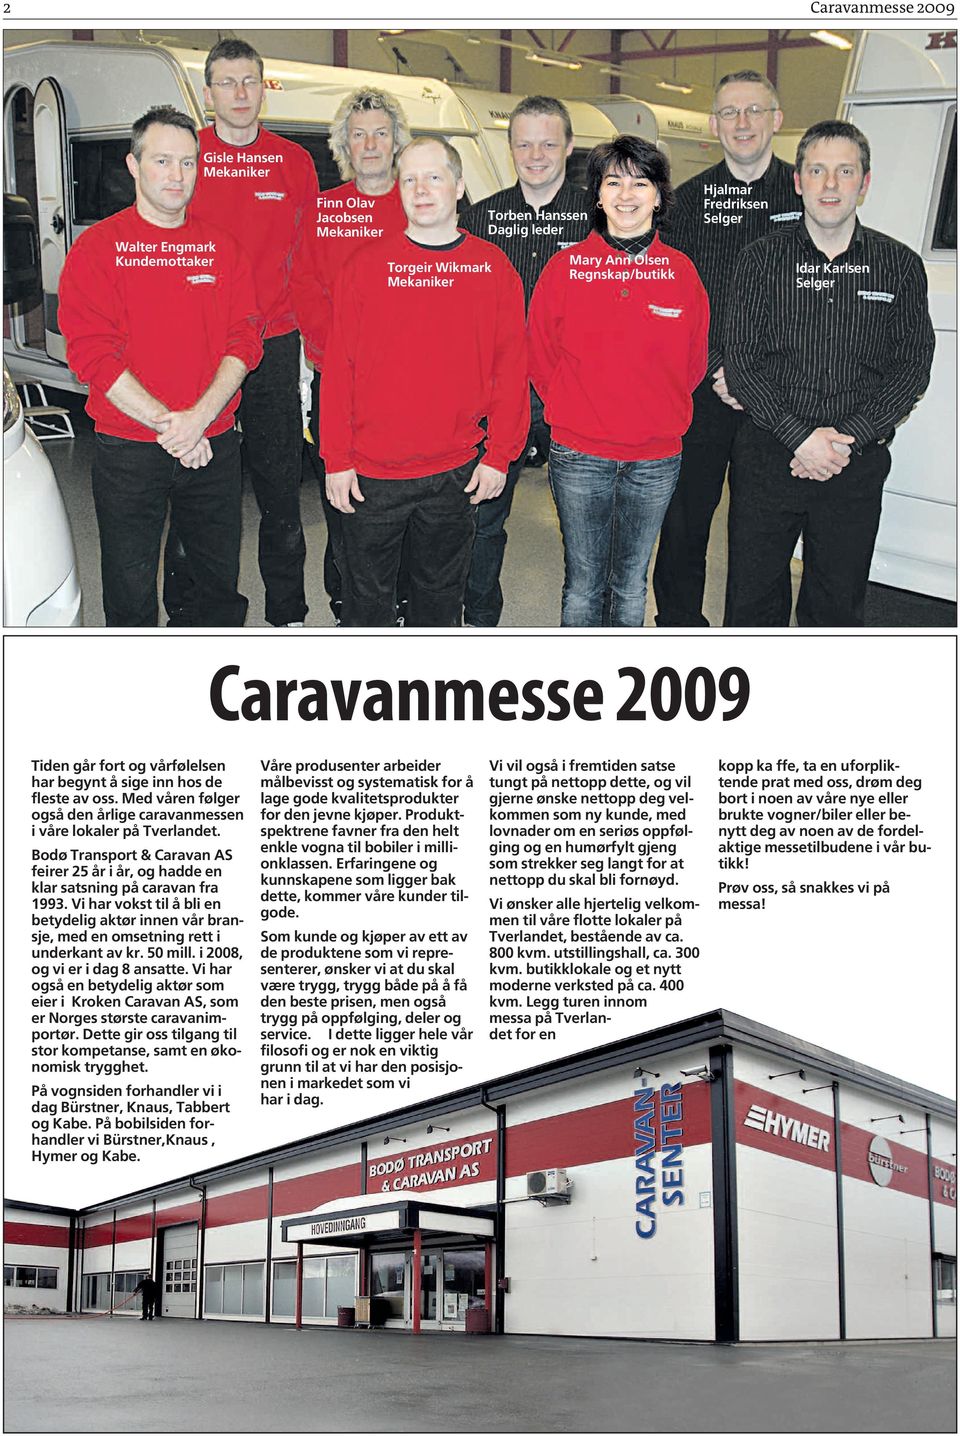 Med våren følger også den årlige caravanmessen i våre lokaler på Tverlandet. Bodø Transport & Caravan AS feirer 25 år i år, og hadde en klar satsning på caravan fra 1993.